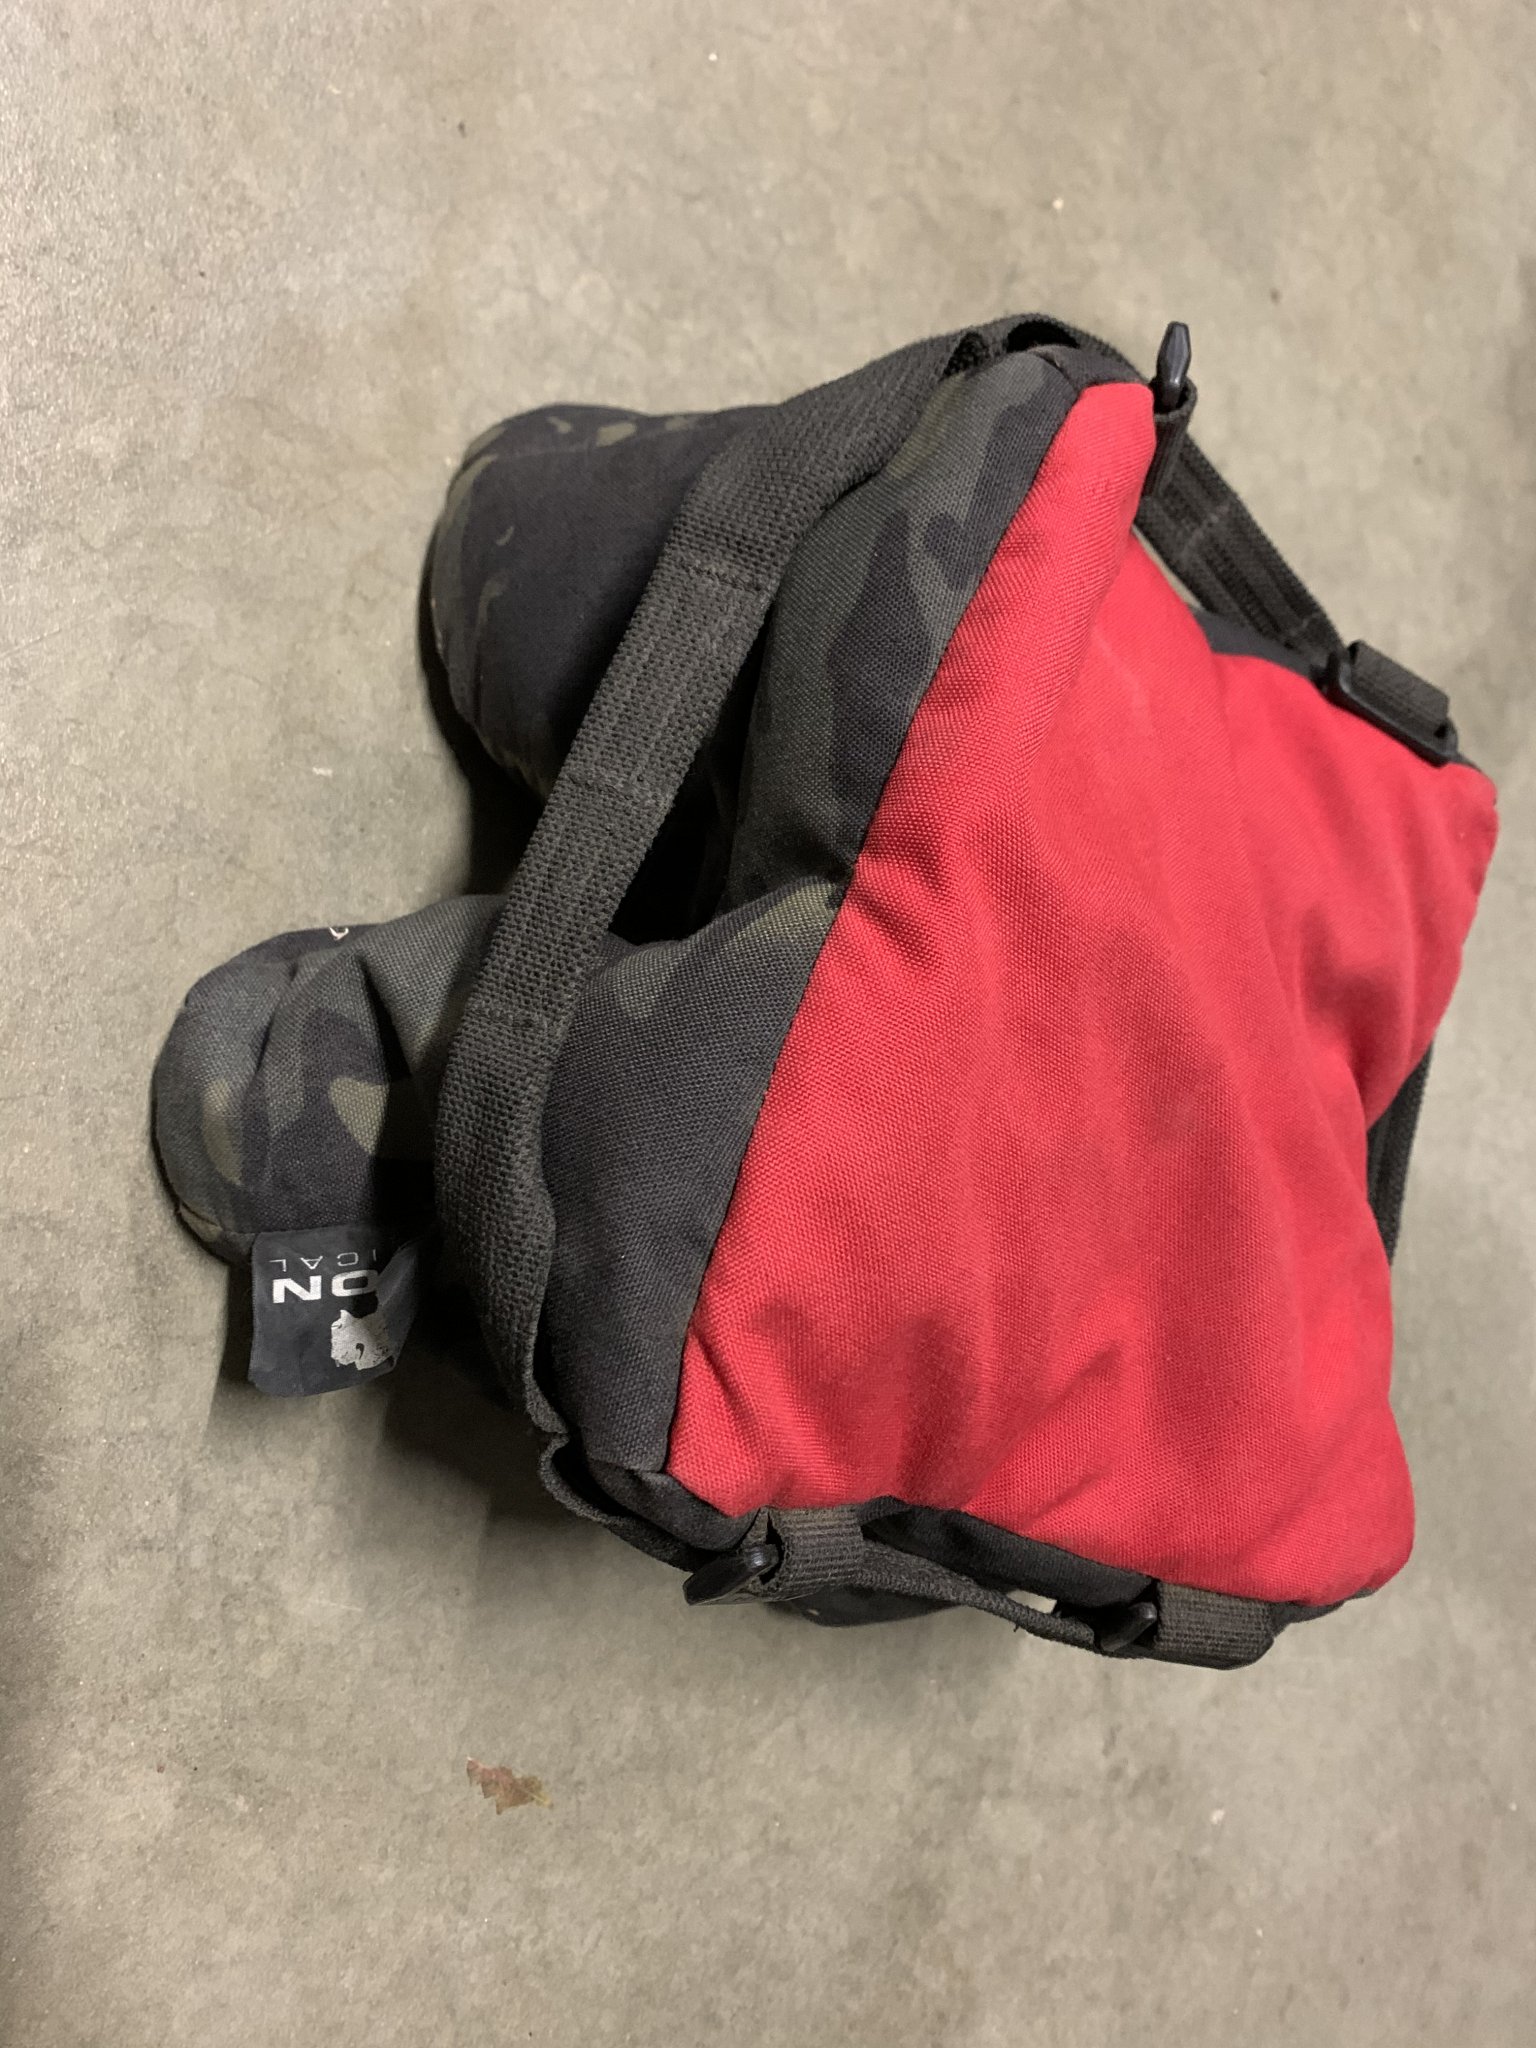 Accessories - FS: Saracen Bag (Tactical Udder) SOLD | Sniper's Hide Forum